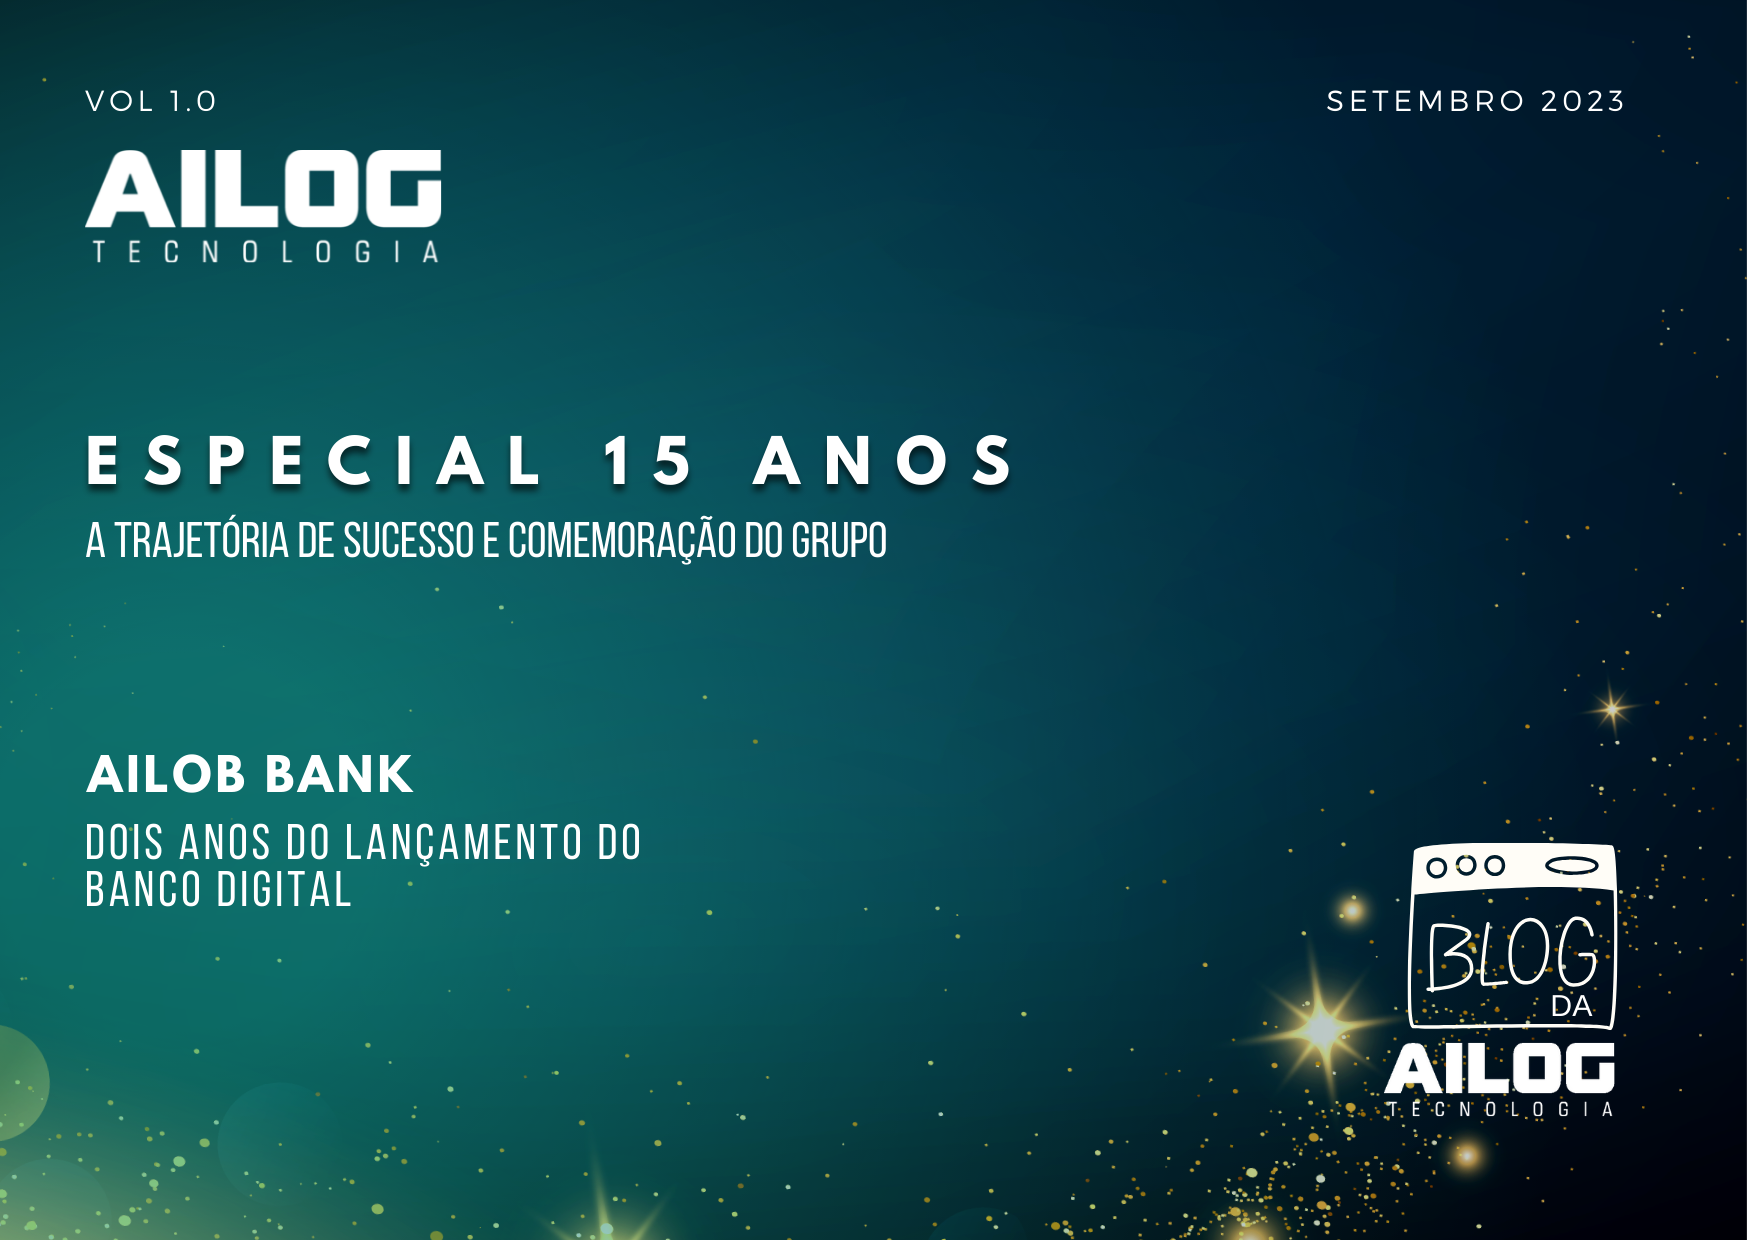 Comemoração dos 15 anos de história do grupo AILOG e dois anos do banco digital AILOG BANK.